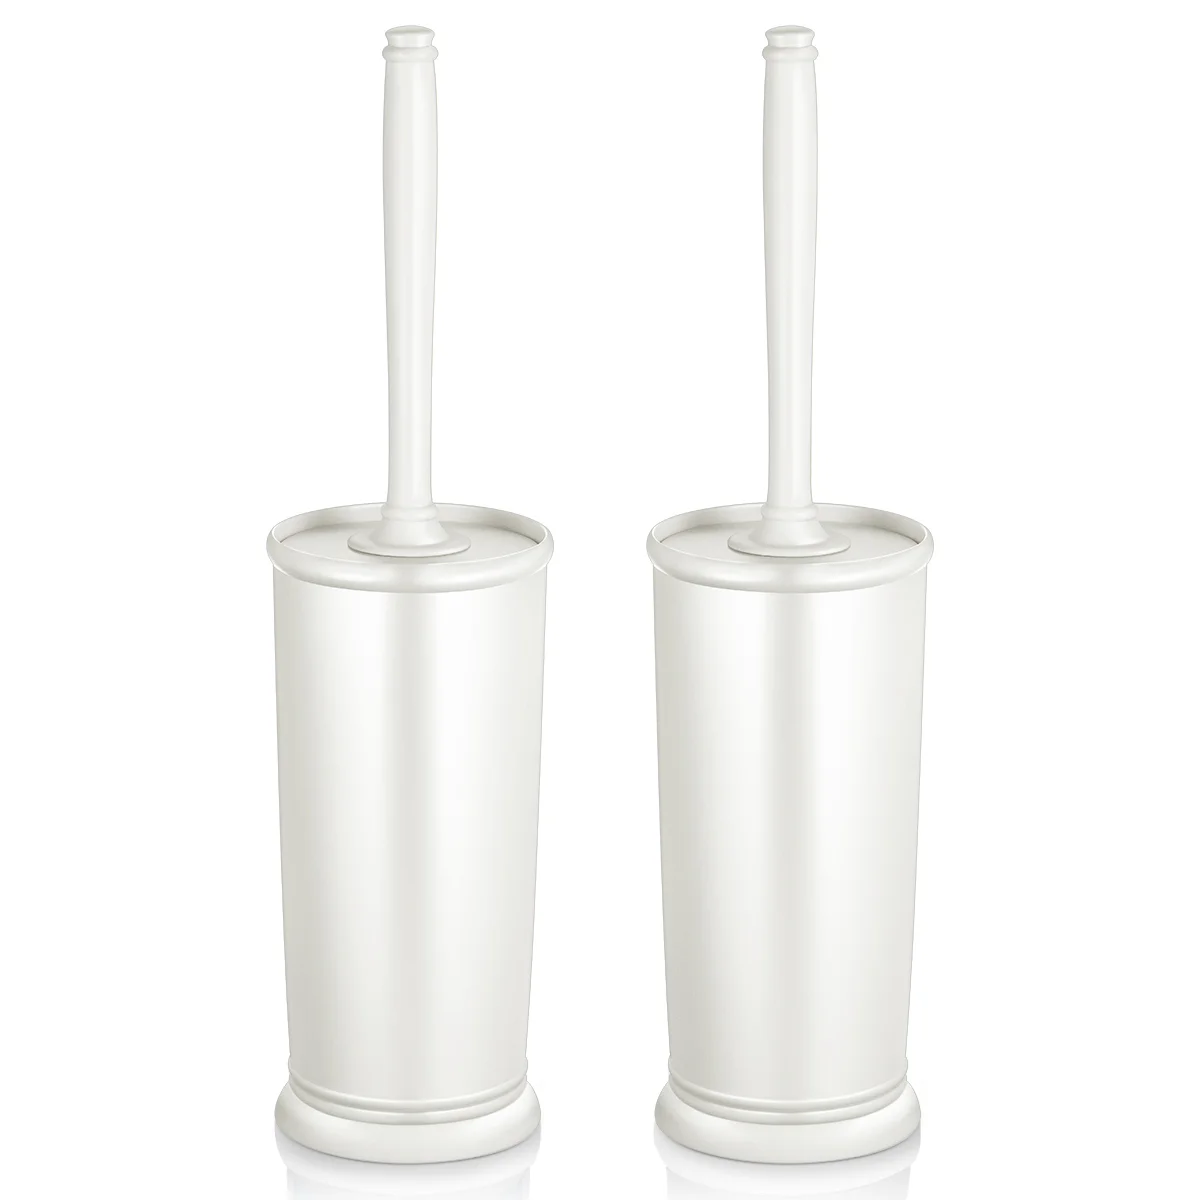 

HOMEMAXS 2 Pack Brush With Holder Good Grip Plastic Bowl Brush Set for Hotel Office Bathroom (White)